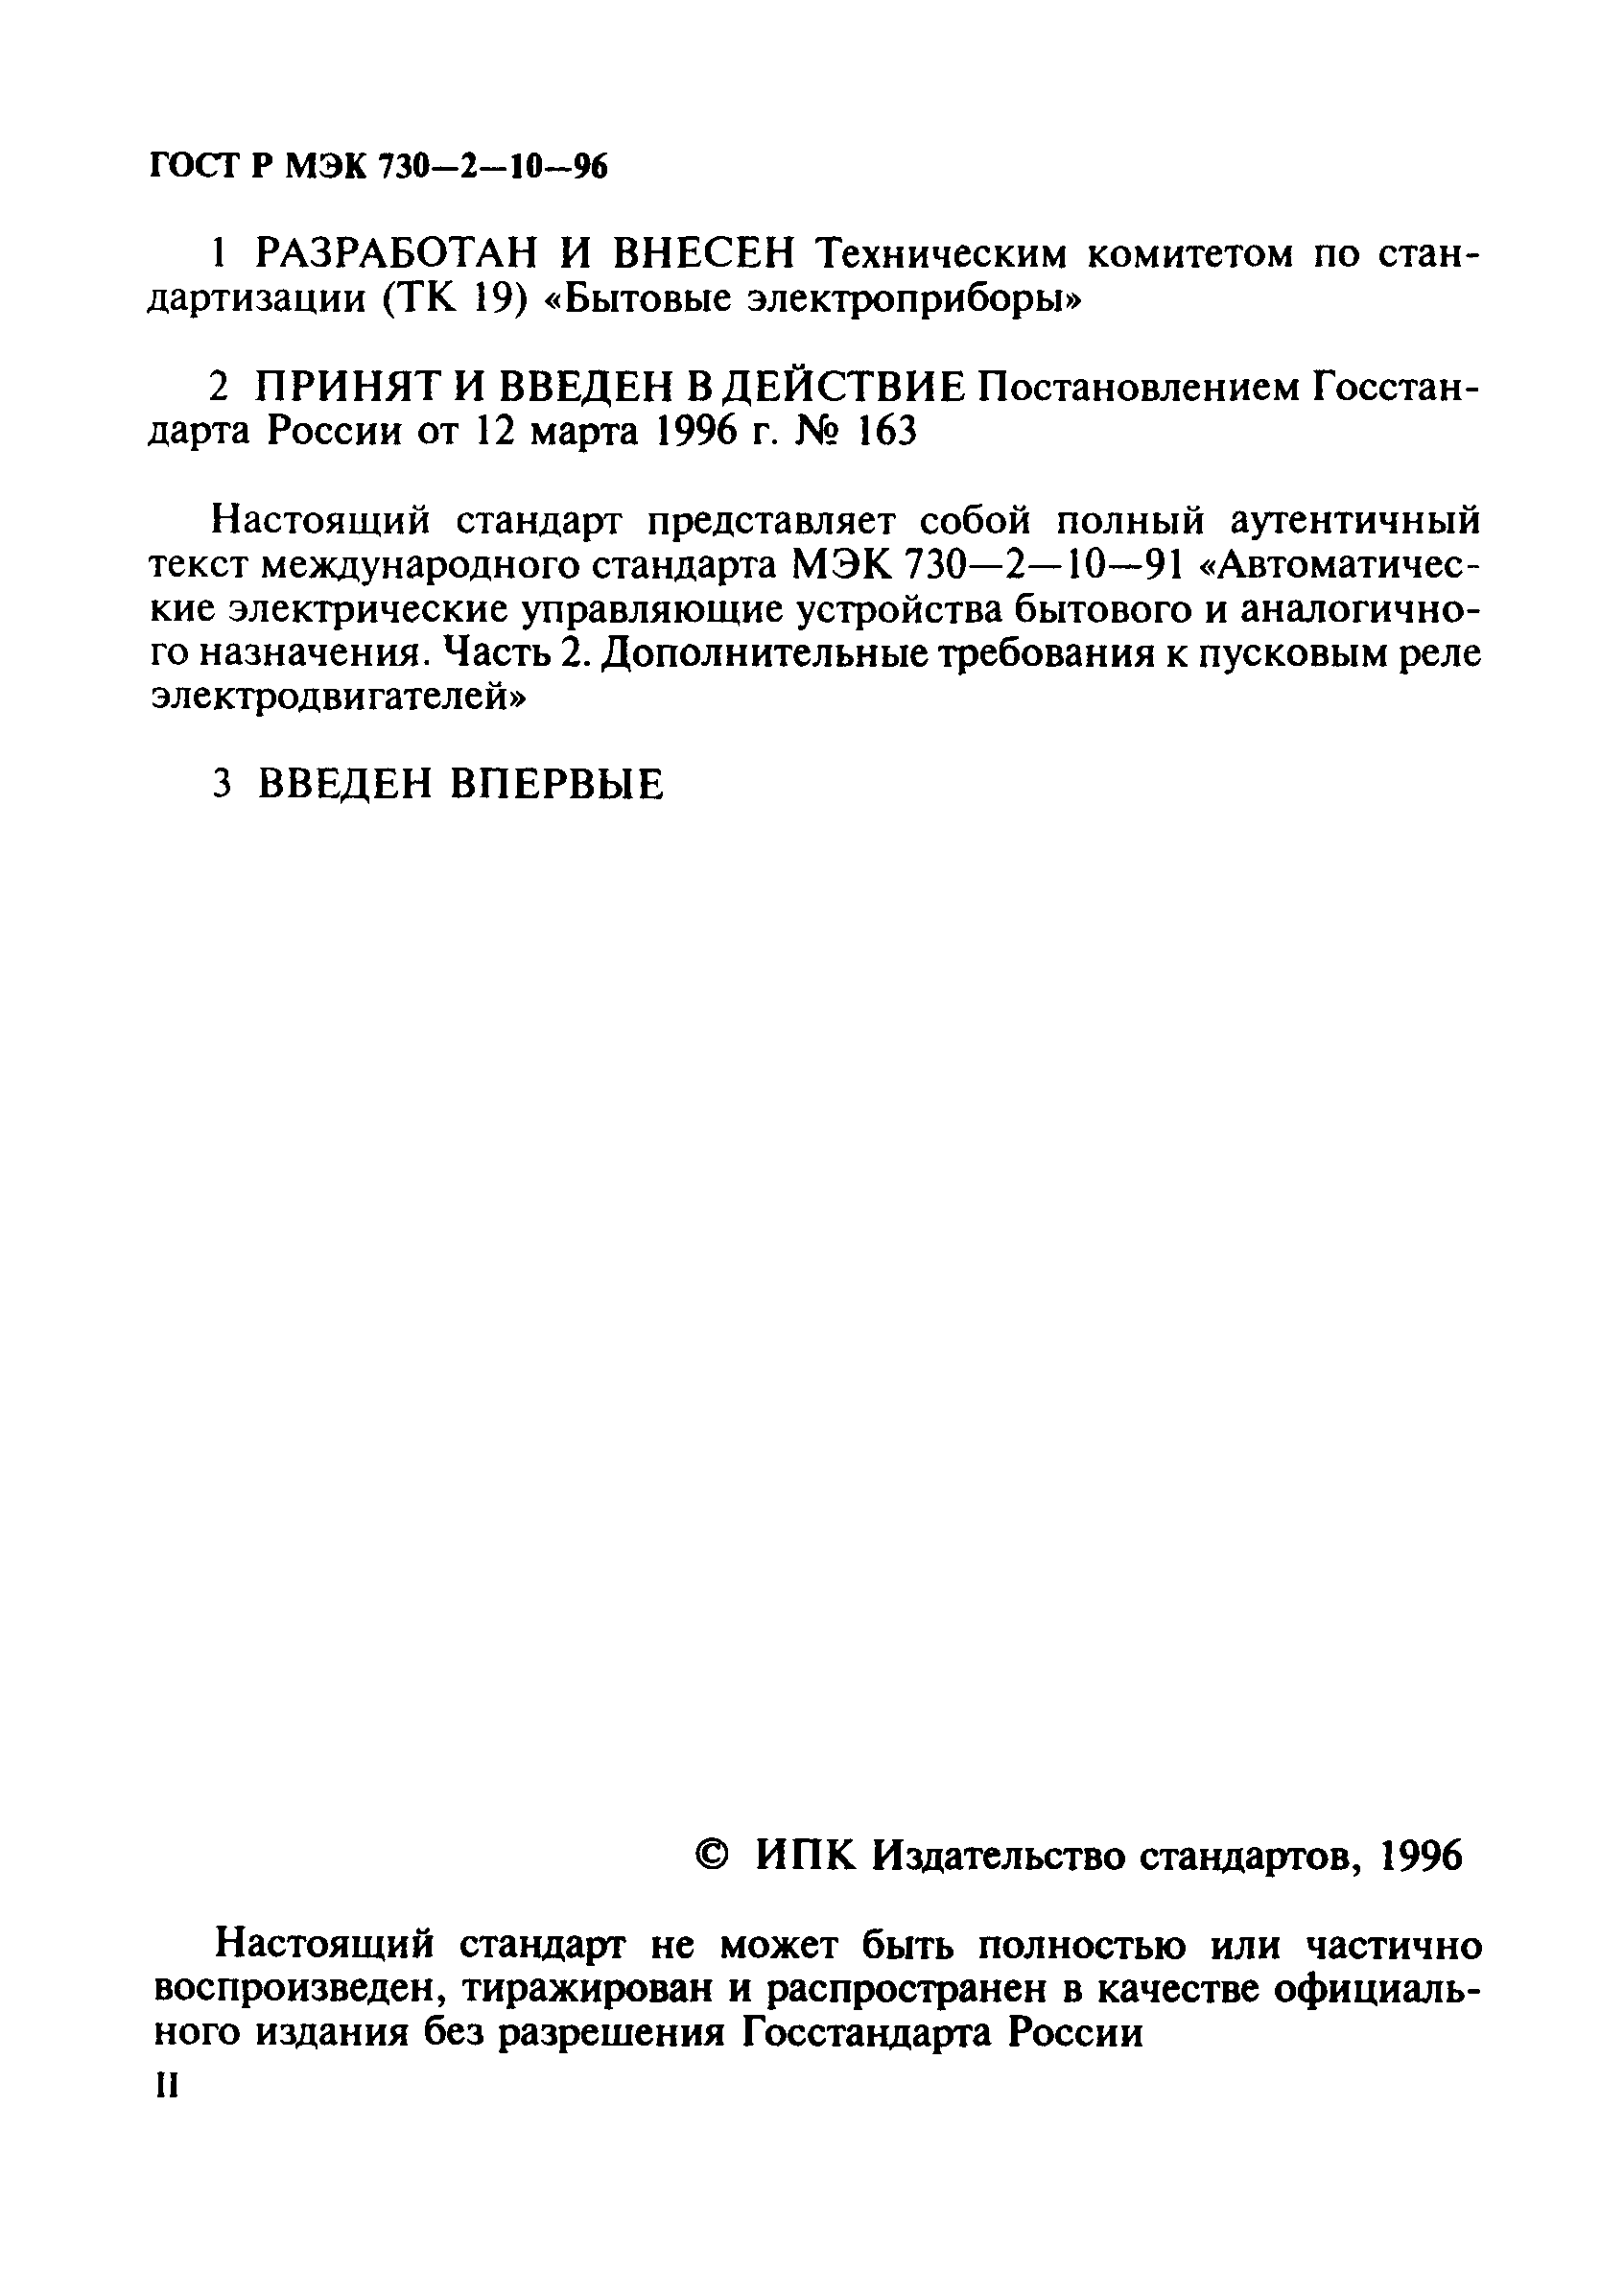 ГОСТ Р МЭК 730-2-10-96